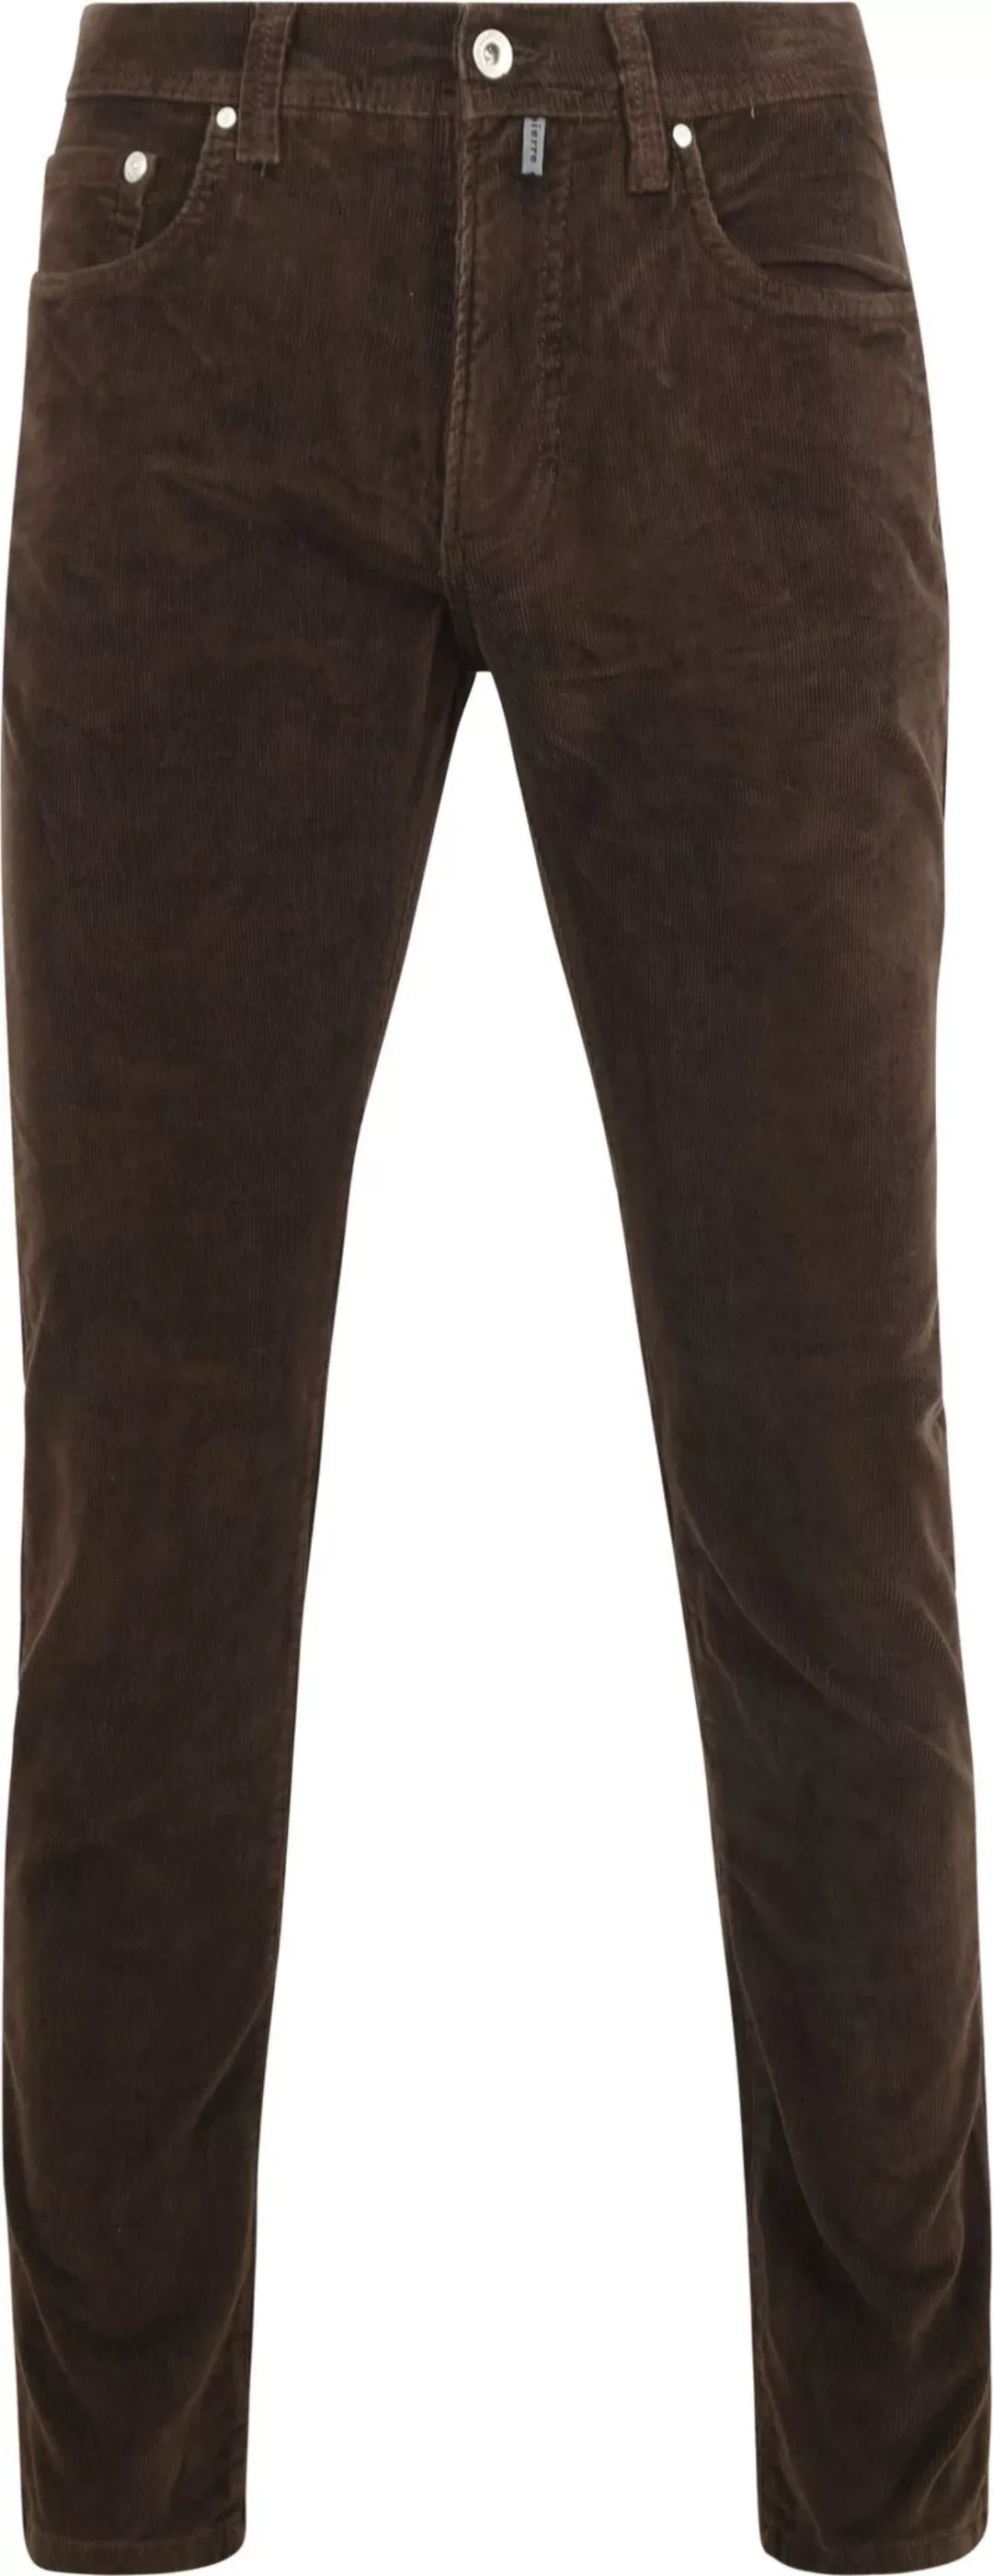 Pierre Cardin Trousers Lyon Future Flex Corduroy Braun - Größe W 32 - L 34 günstig online kaufen